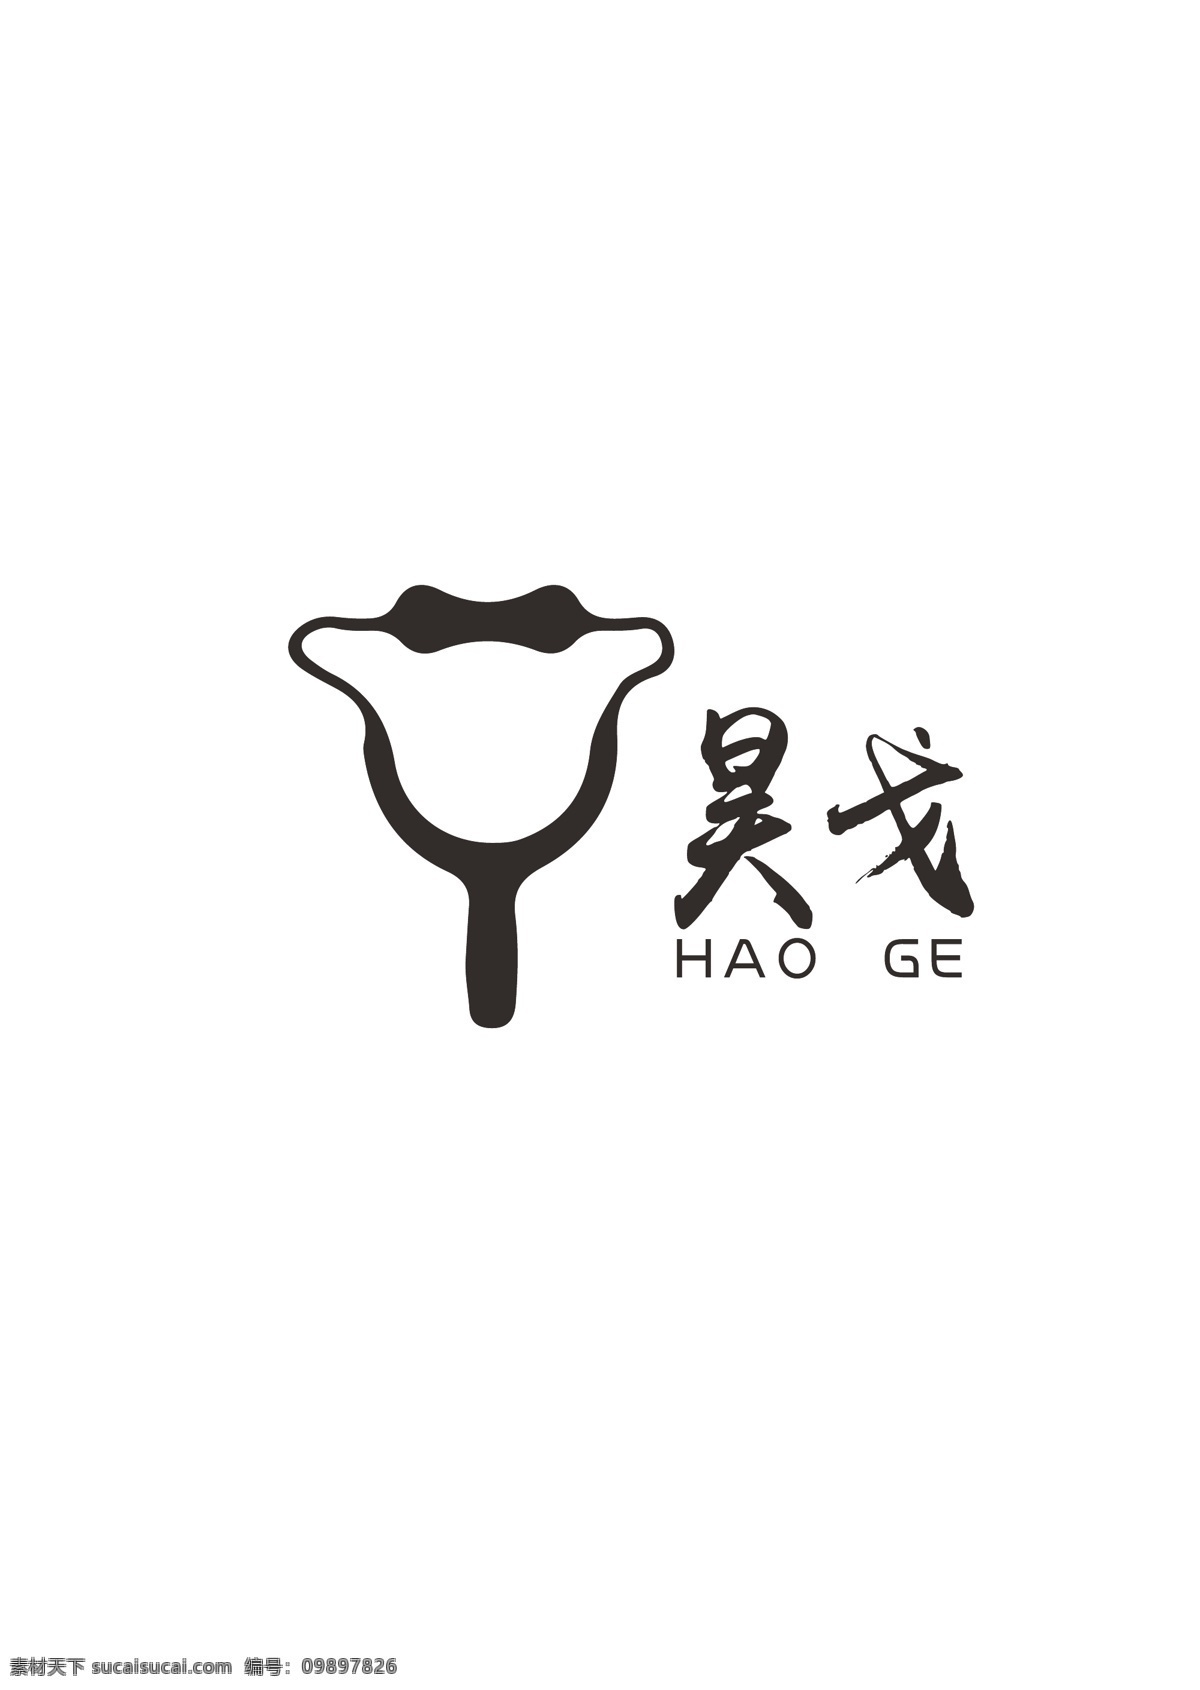 弹弓 行业 logo 小牛形状 线条logo logo设计 标识设计 ai矢量